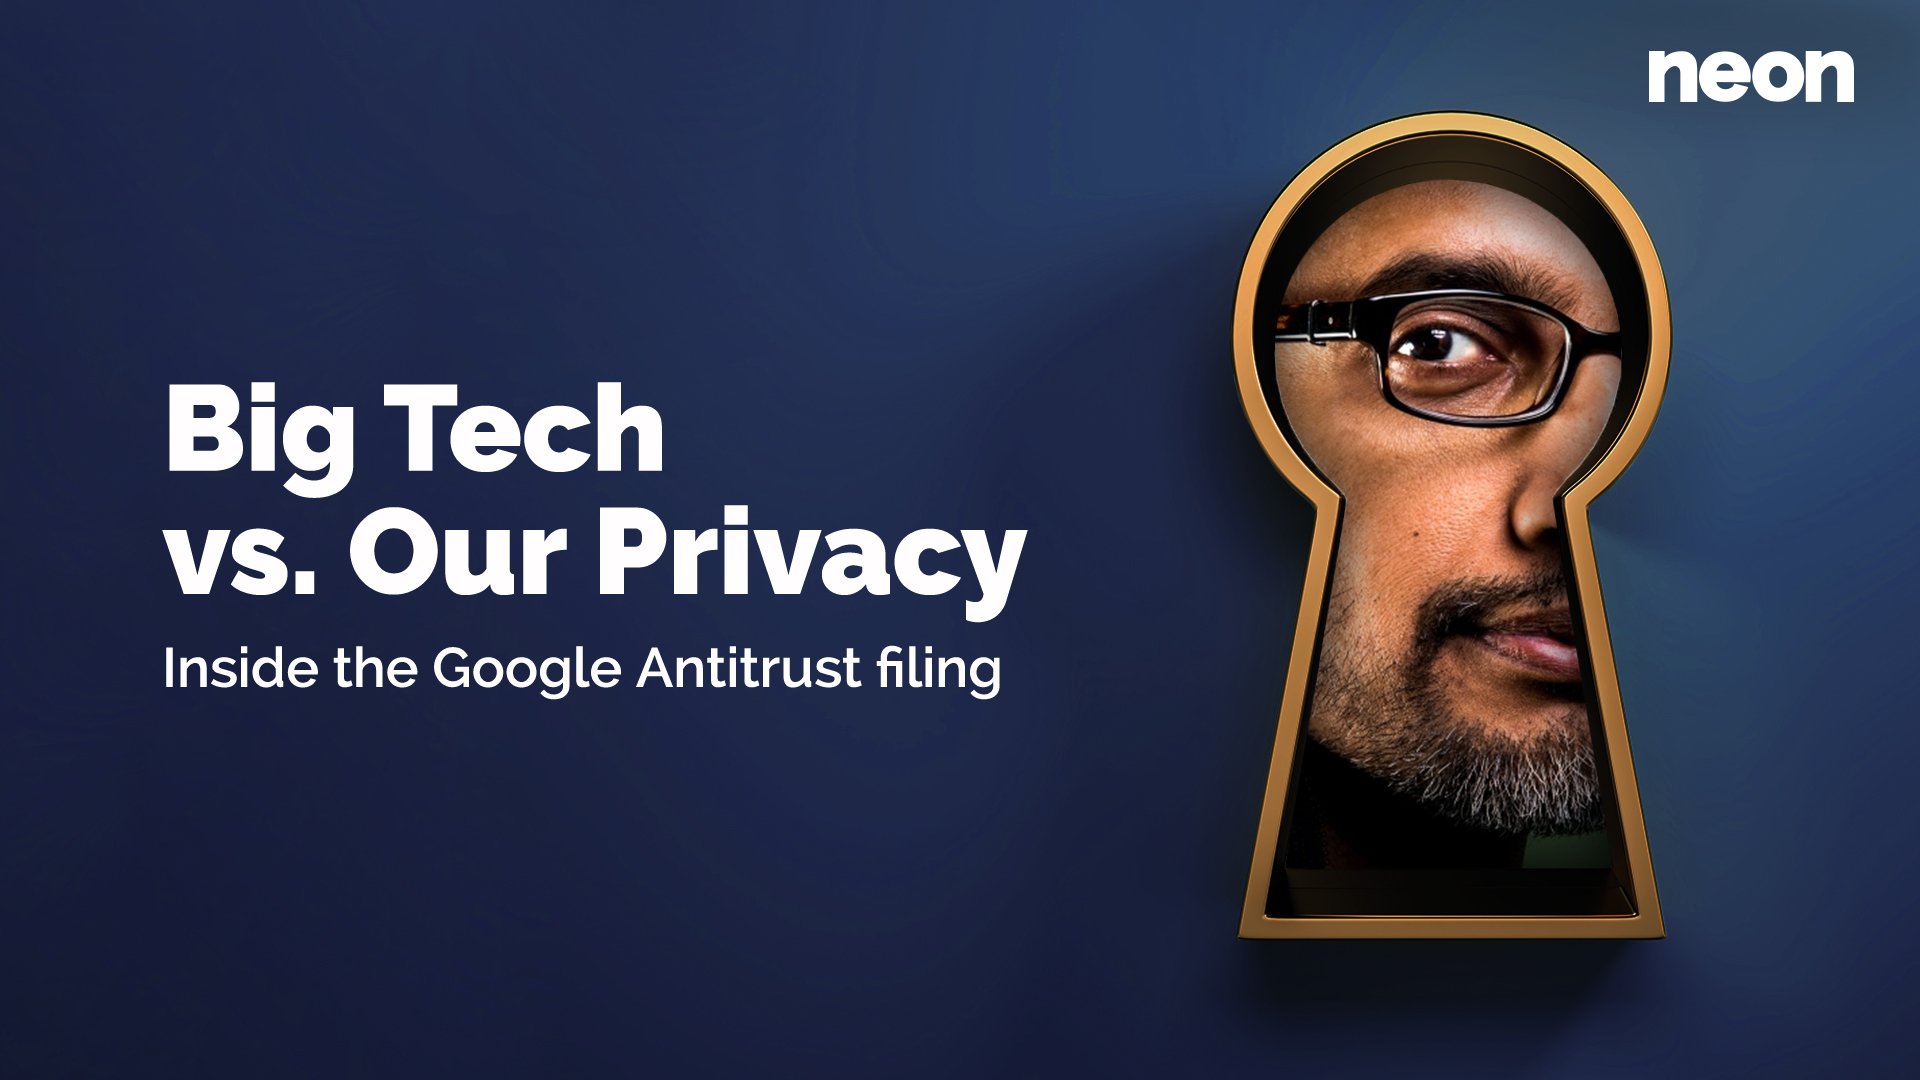 Big Tech vs. our privacy